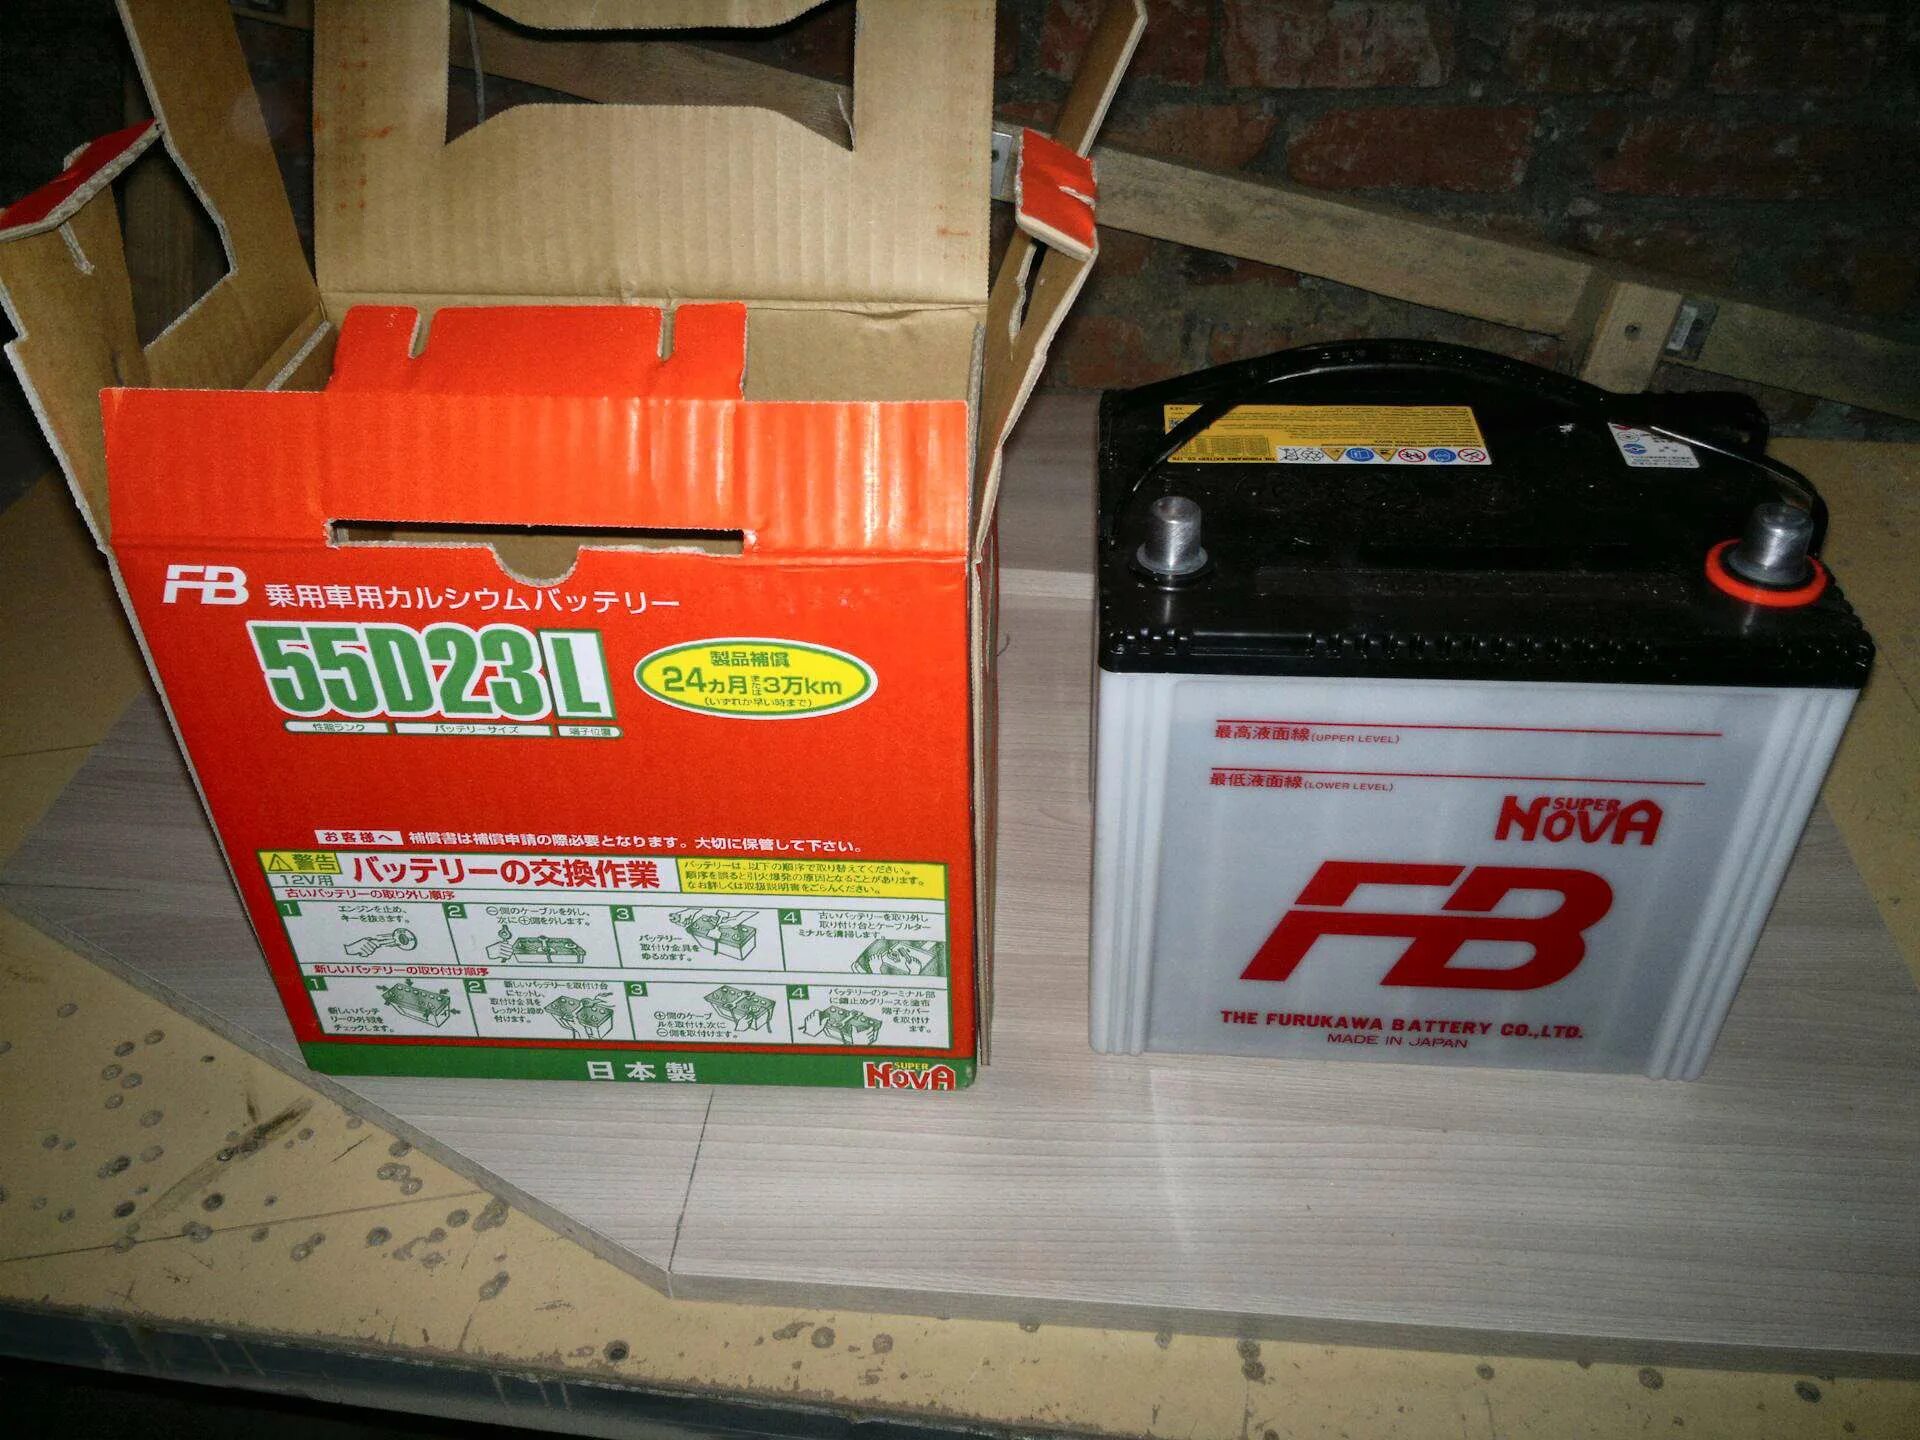 Furukawa Battery 55d23l. Аккумулятор fb super Nova 55d23l. 55d23l MF аккумулятор Furukawa. S 55 D 23l аккумулятор Furukawa.